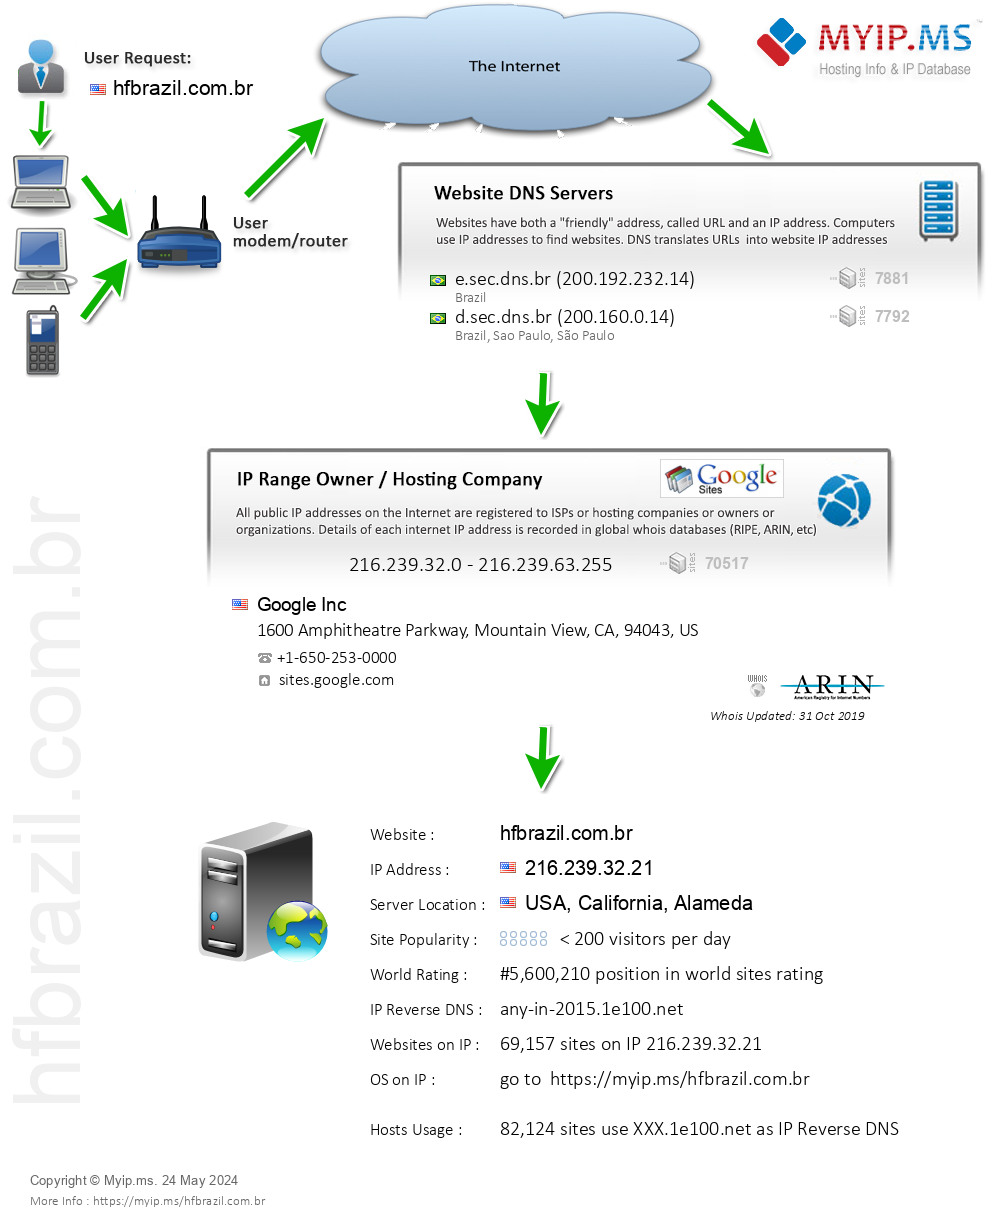 Hfbrazil.com.br - Website Hosting Visual IP Diagram